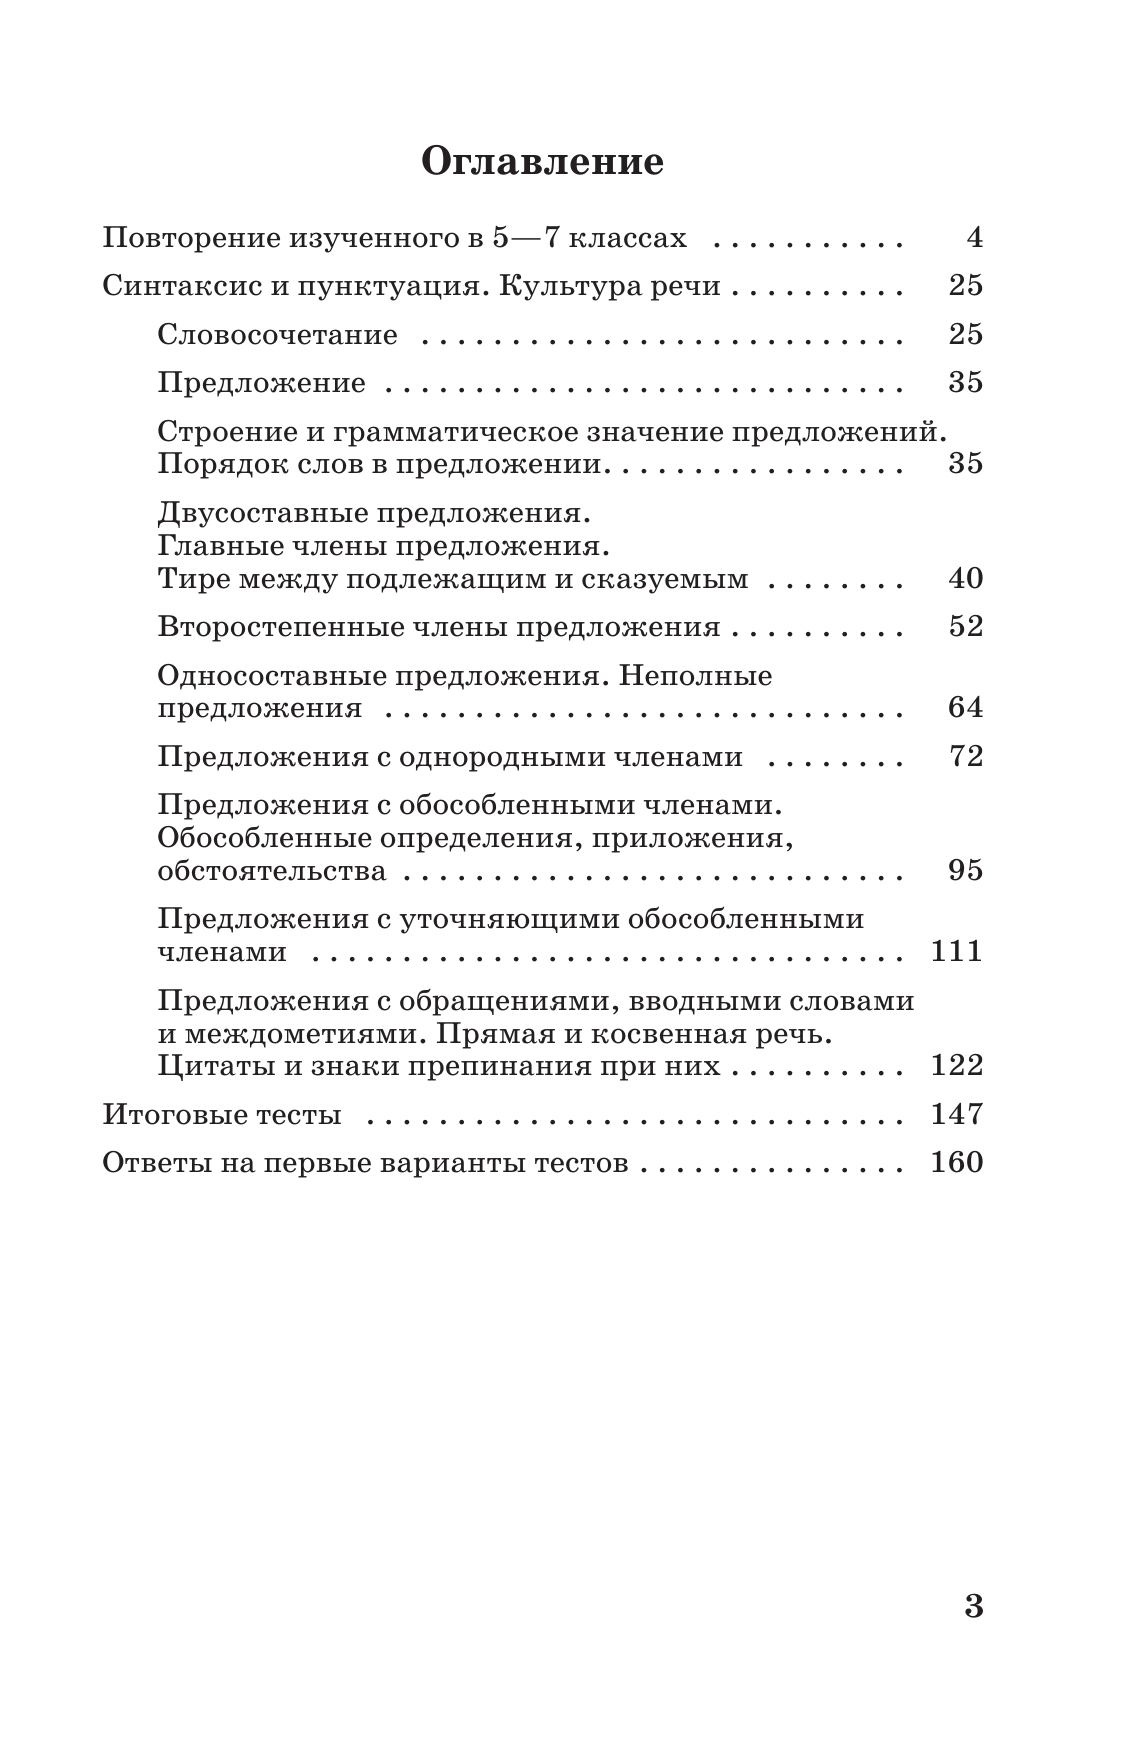 Тестовые задания по русскому языку. 8 класс. 4